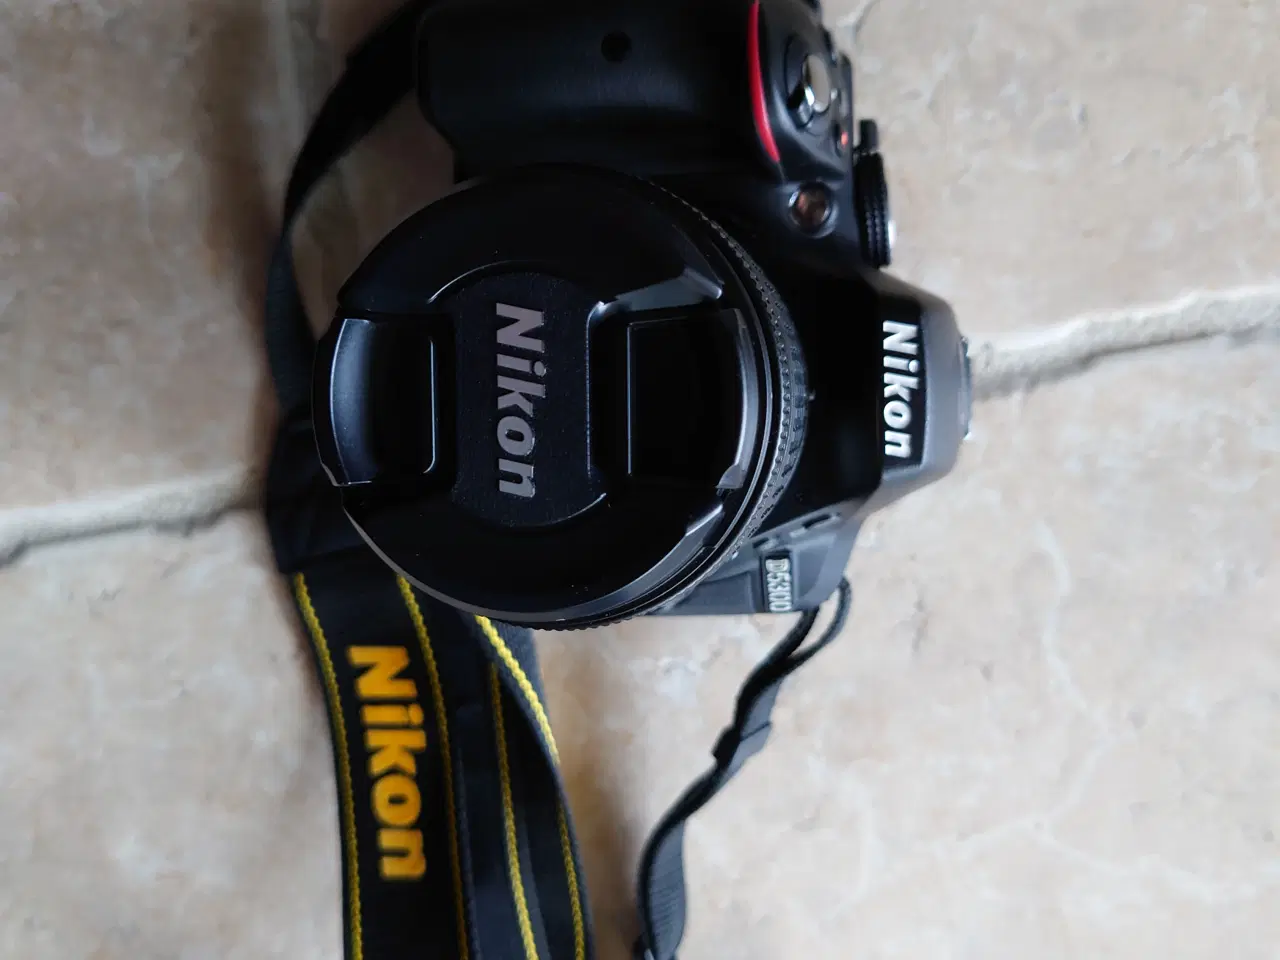 Billede 6 - Lækkert spejlreflekskamera mrk. Nikon D5300